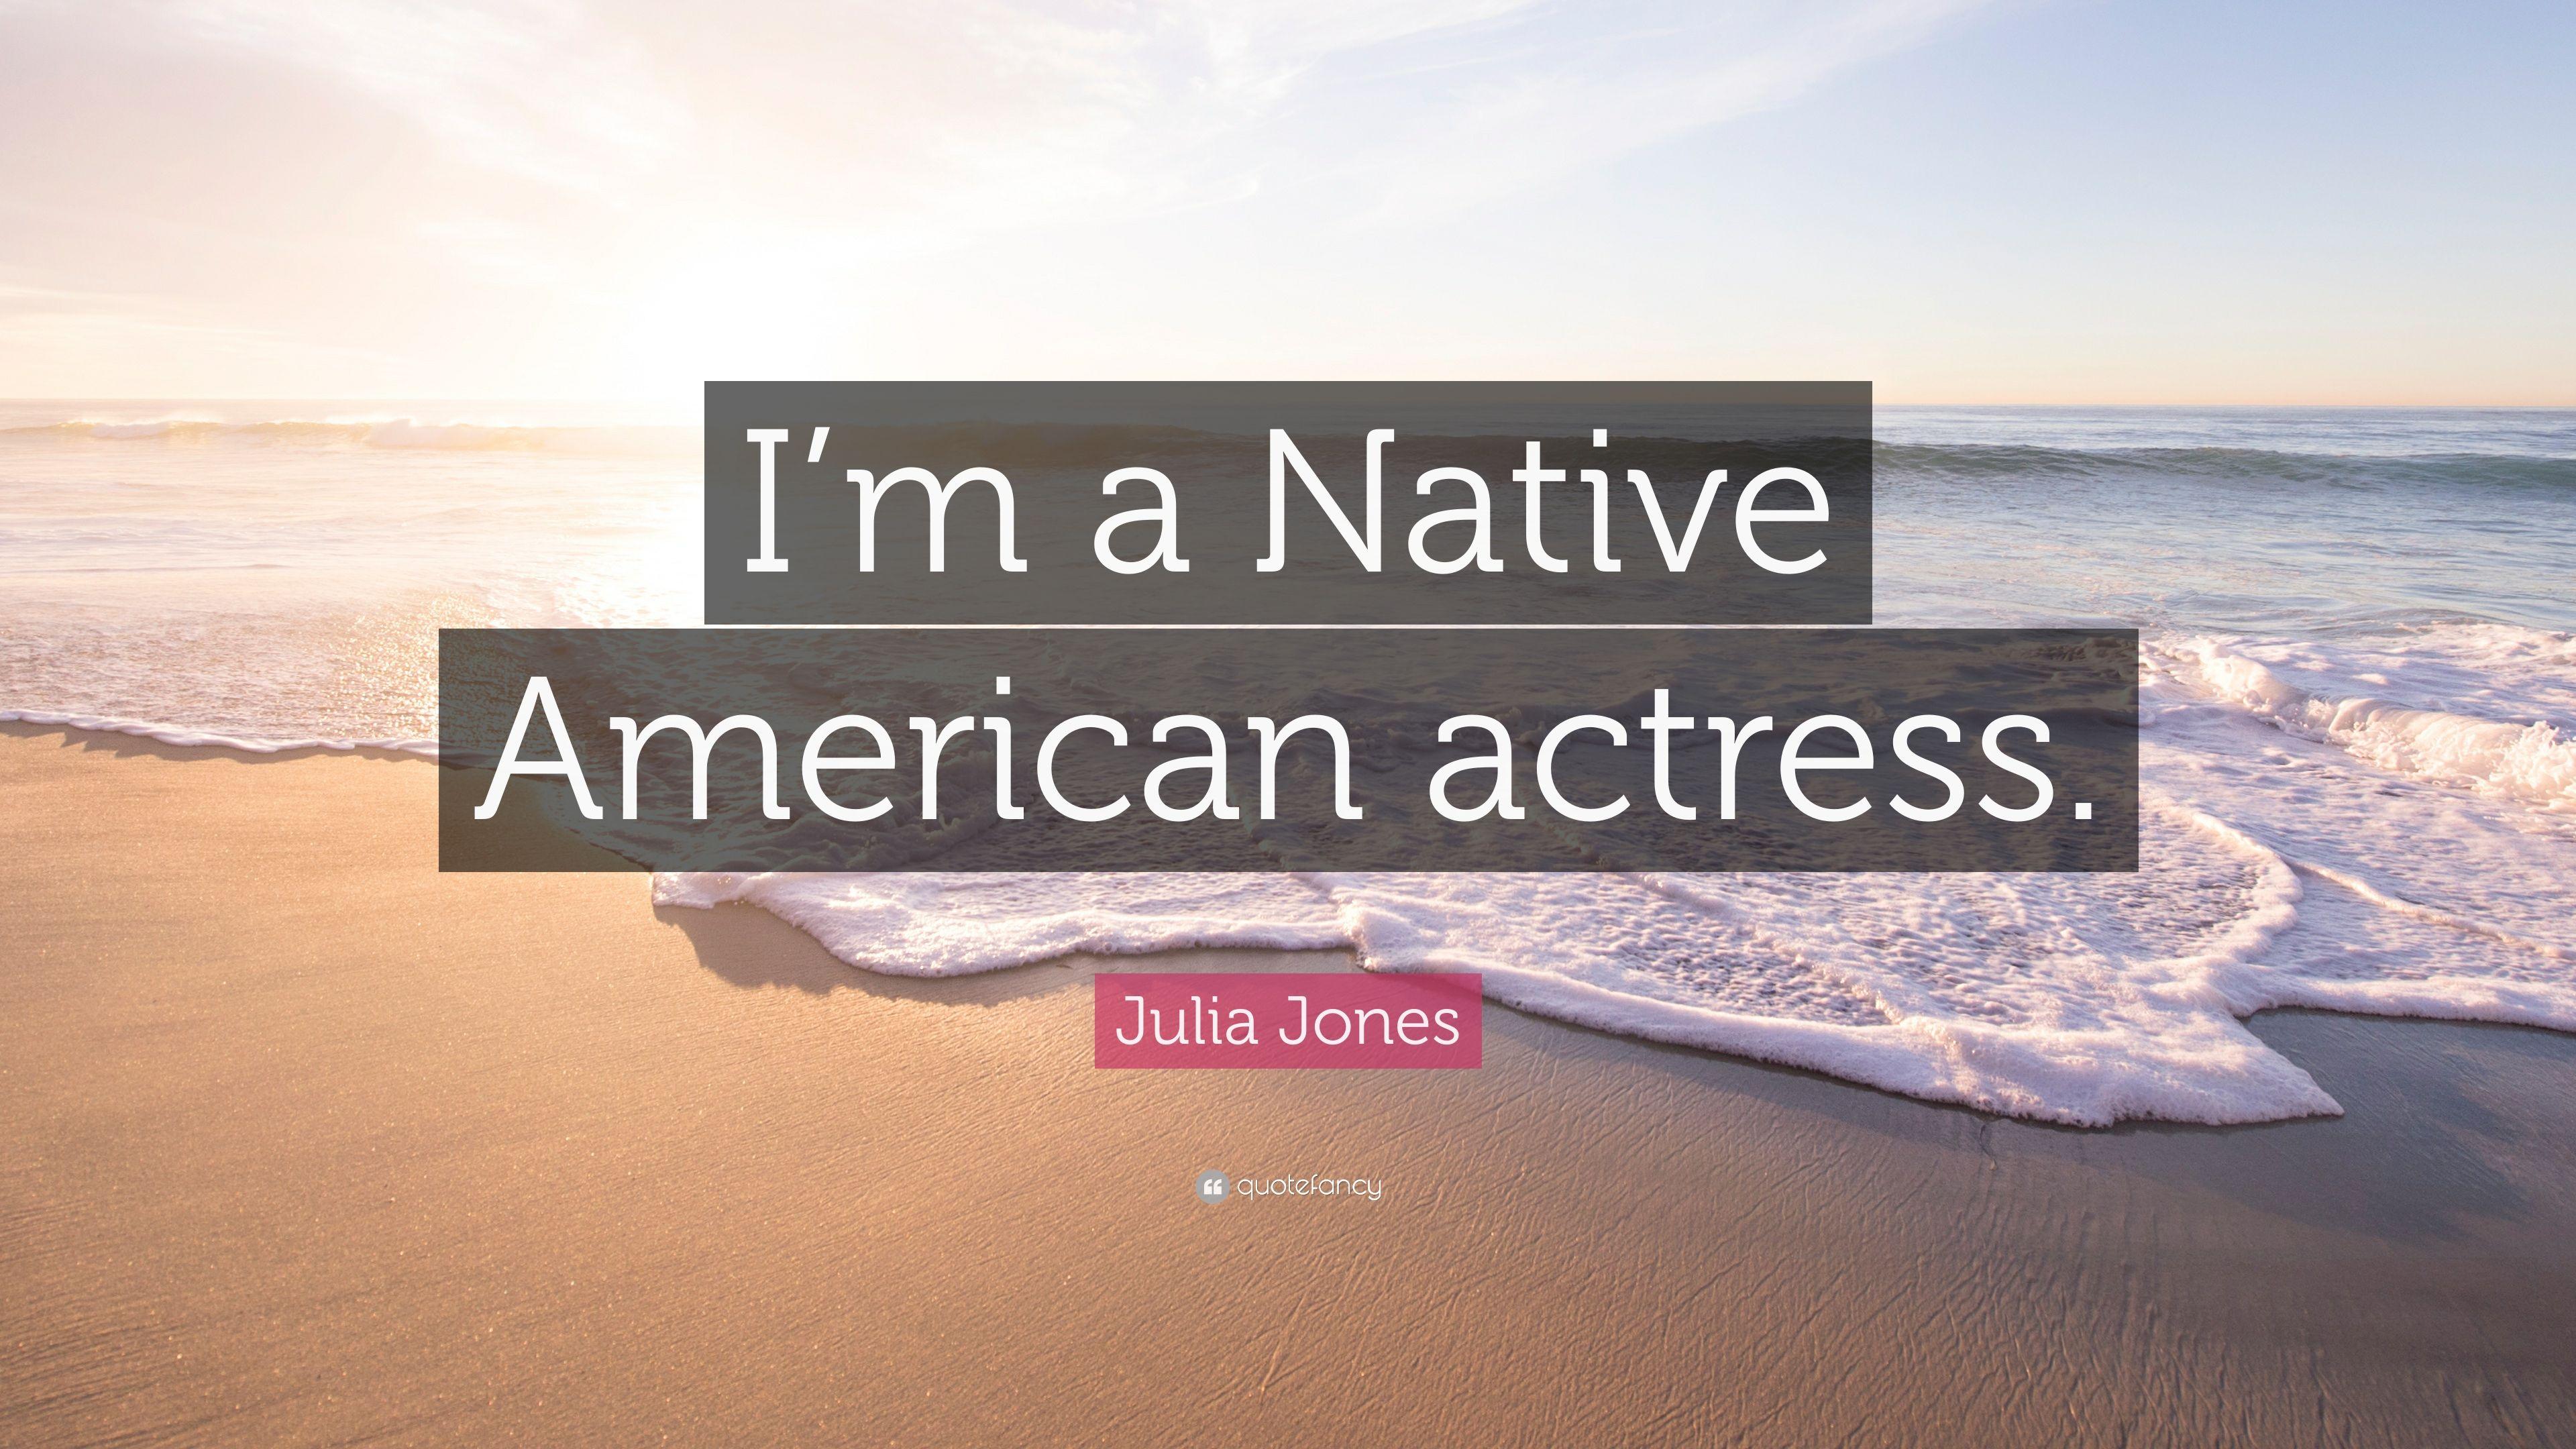 Julia Jones Quote: “I'm a Native American actress.” 7